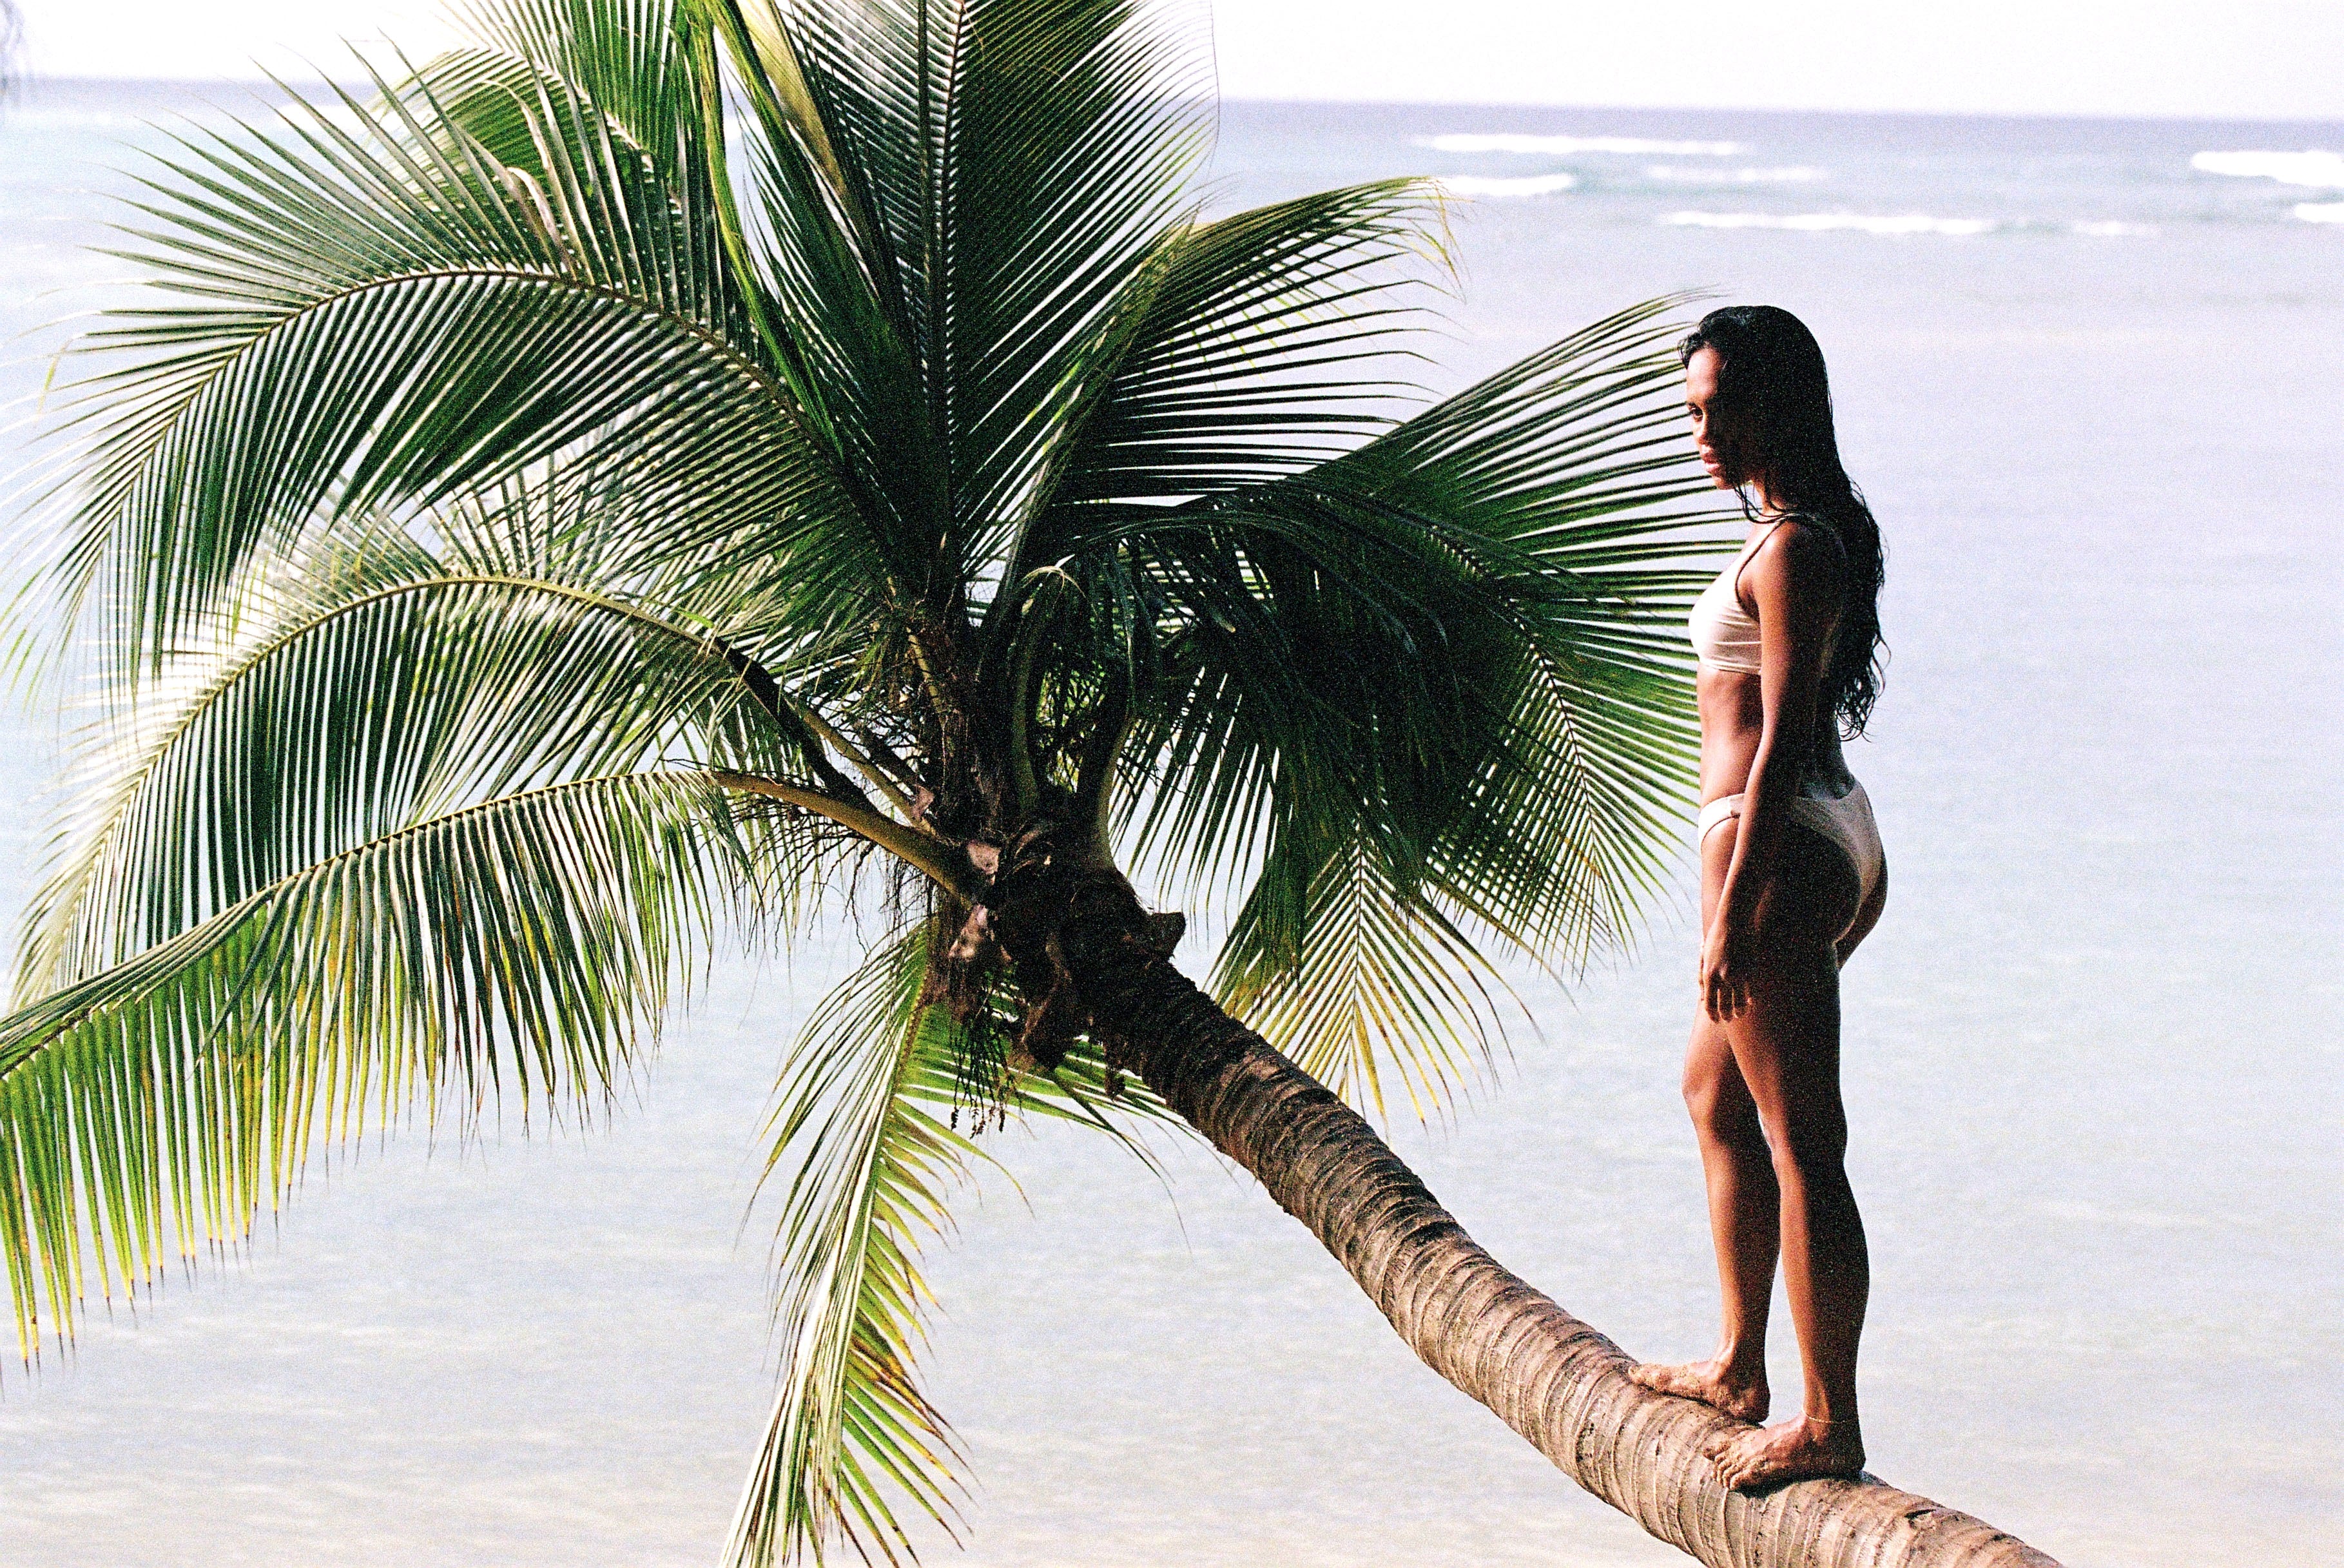 Women in white bikini walking on a palm tree in a beach in Hawaii